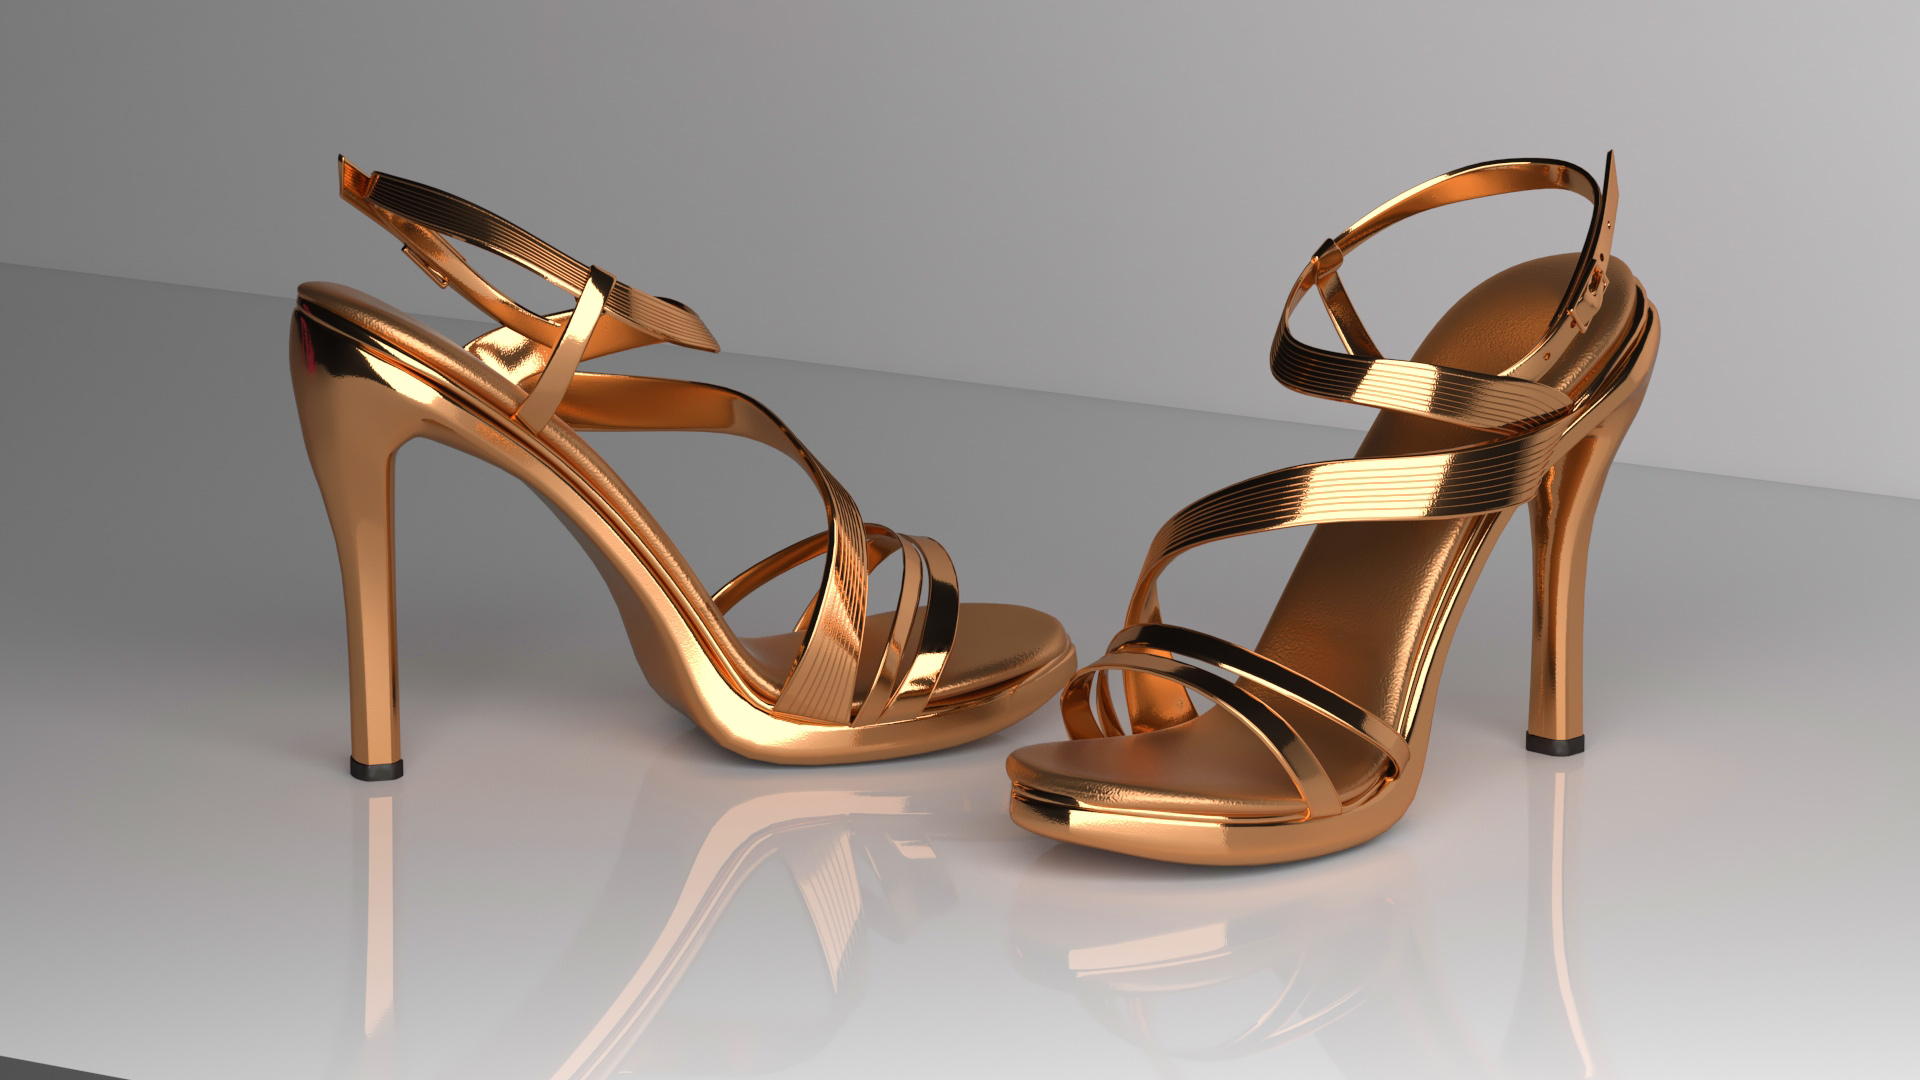 Graphiste Designer 3D freelance : mode et footwear : modélisation 3D de chaussures pour femmes - Graphiste Designer 3D freelance